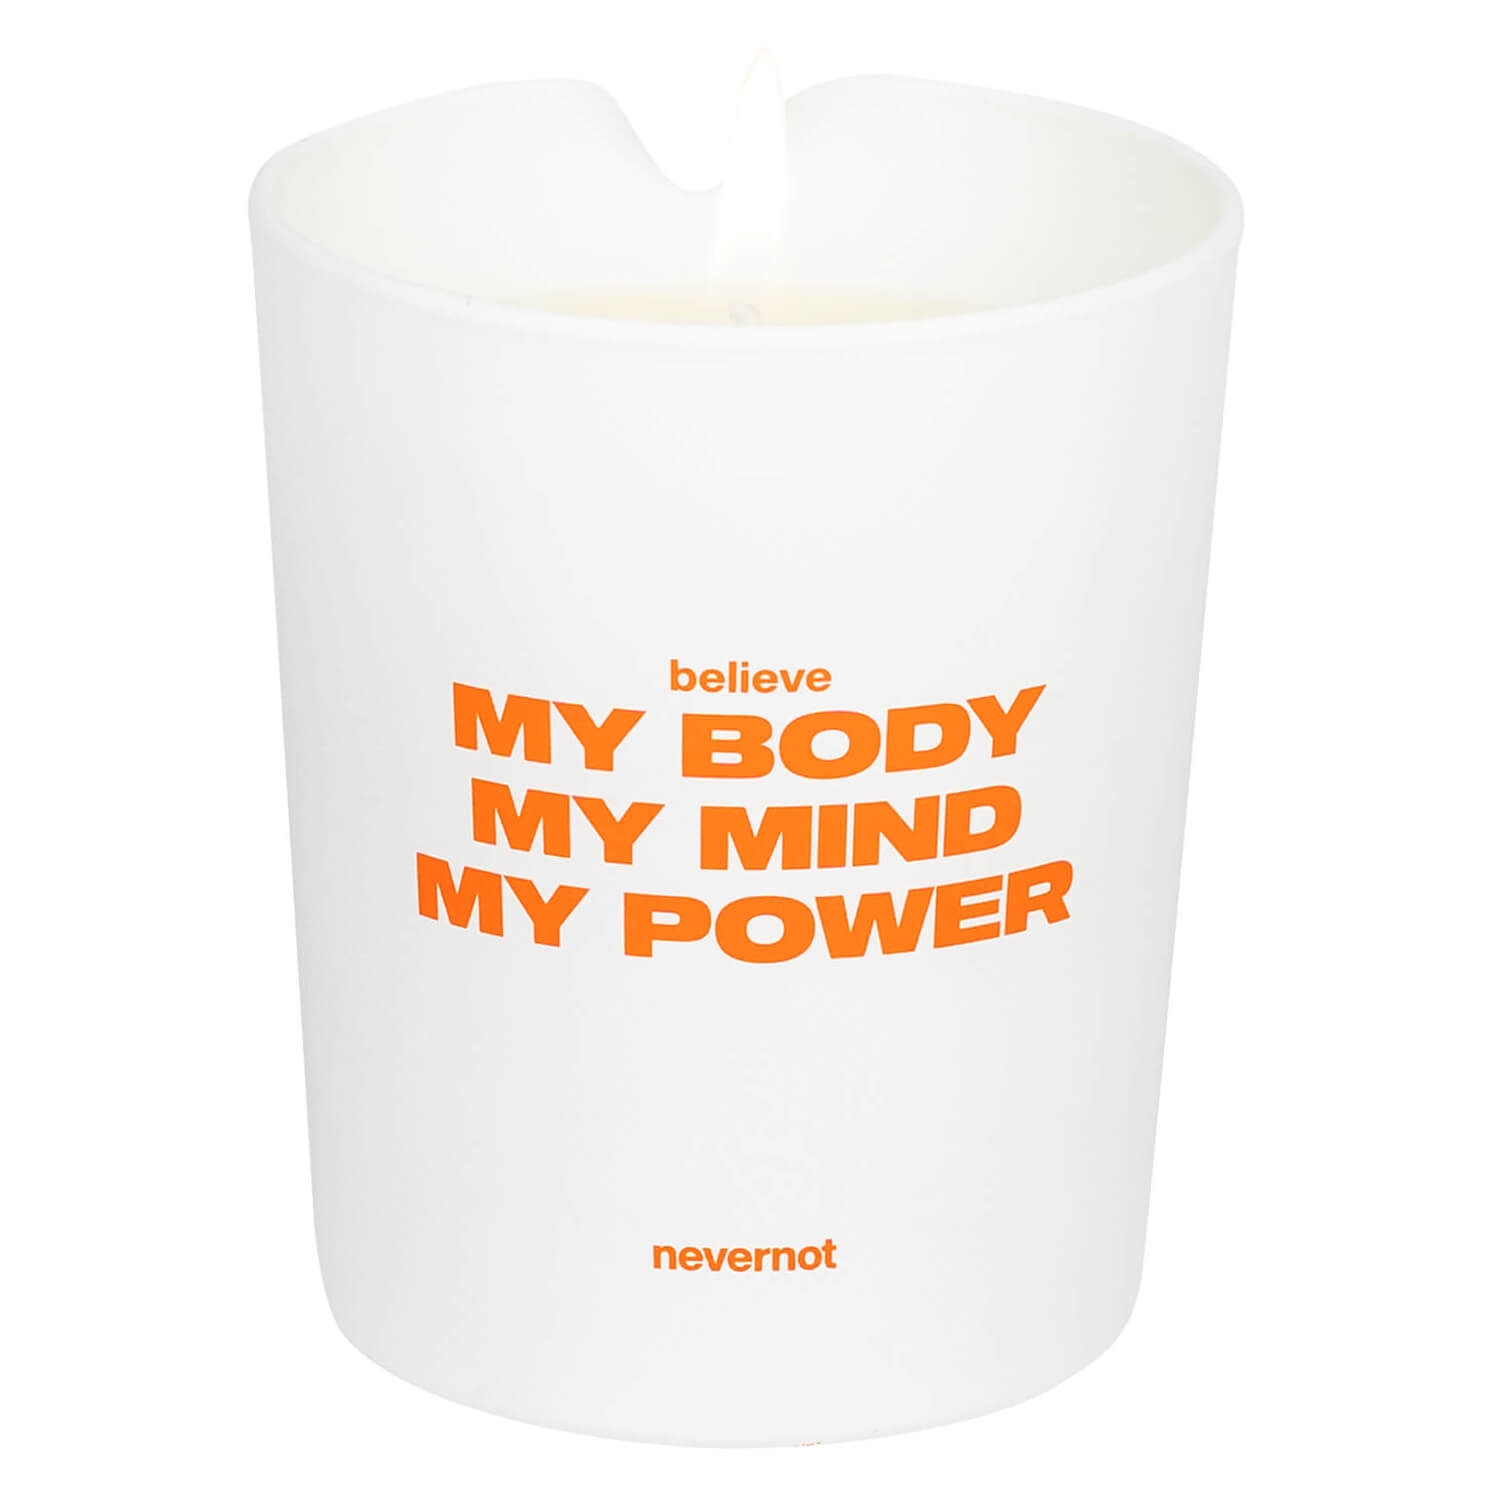 Produktbild von nevernot - Massage Candle believe